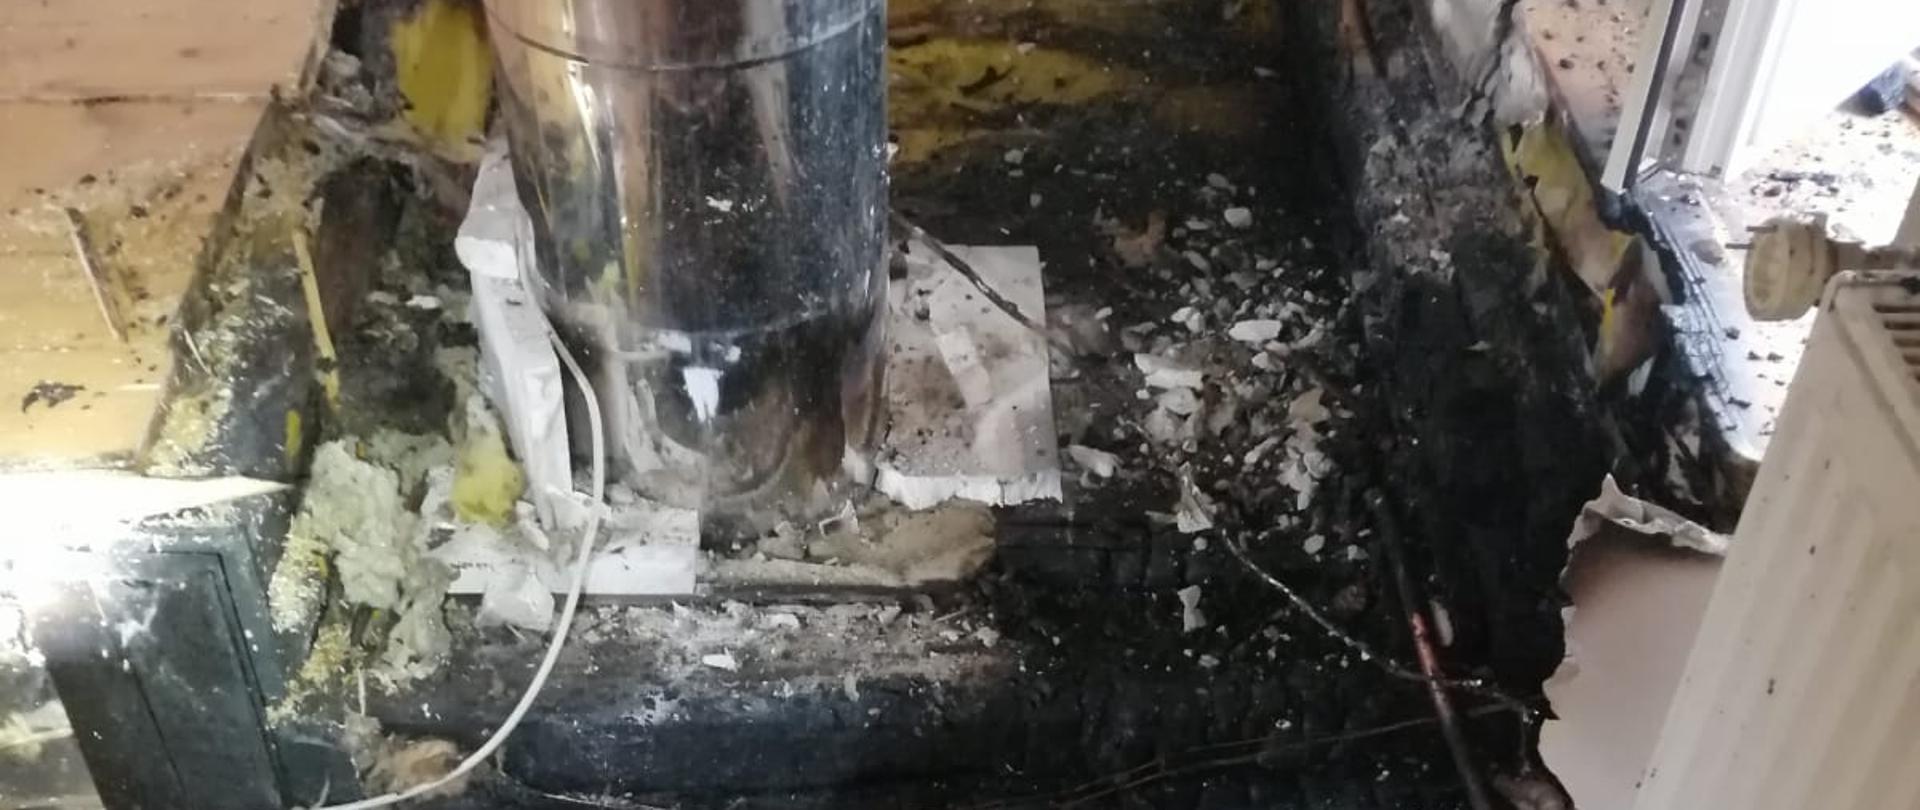 Zdjęcie przedstawia wypalony strop w okolicach przewodu dymowego z kominka